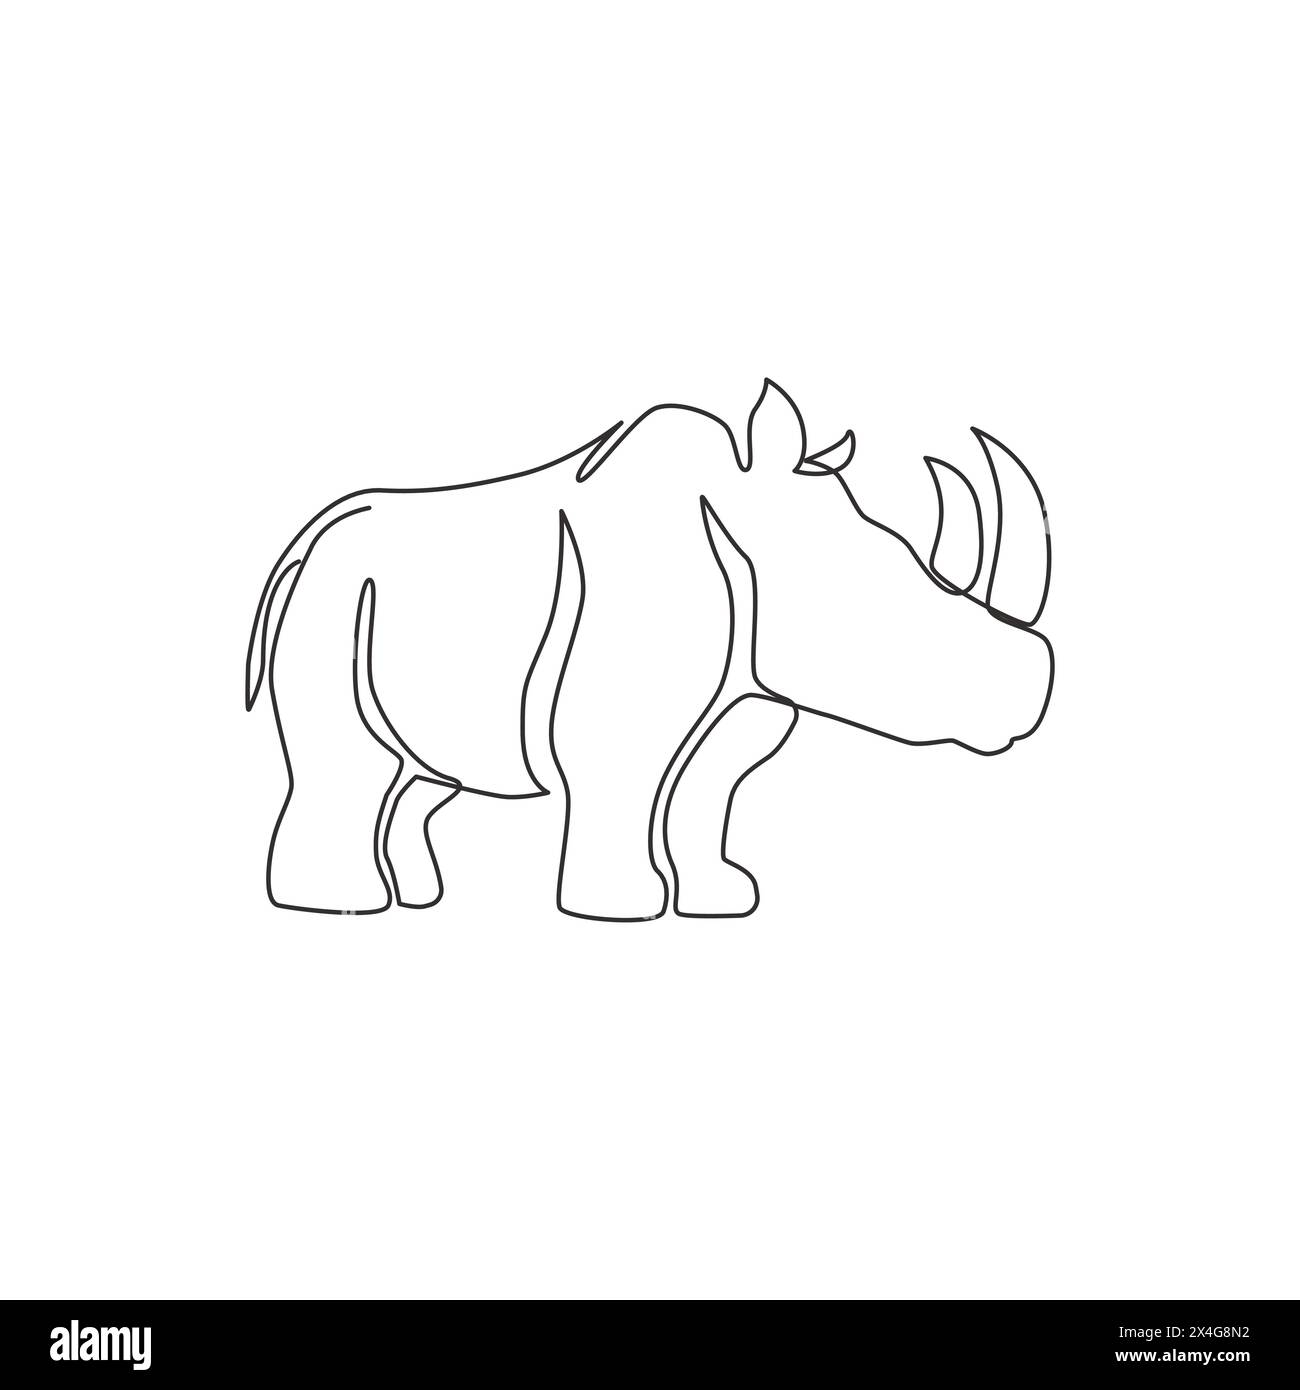 Un dessin d'une seule ligne de rhinocéros forts pour l'identité du logo du parc national de conservation. Concept de mascotte d'animaux de grand rhinocéros africain pour le zoo national sa Illustration de Vecteur